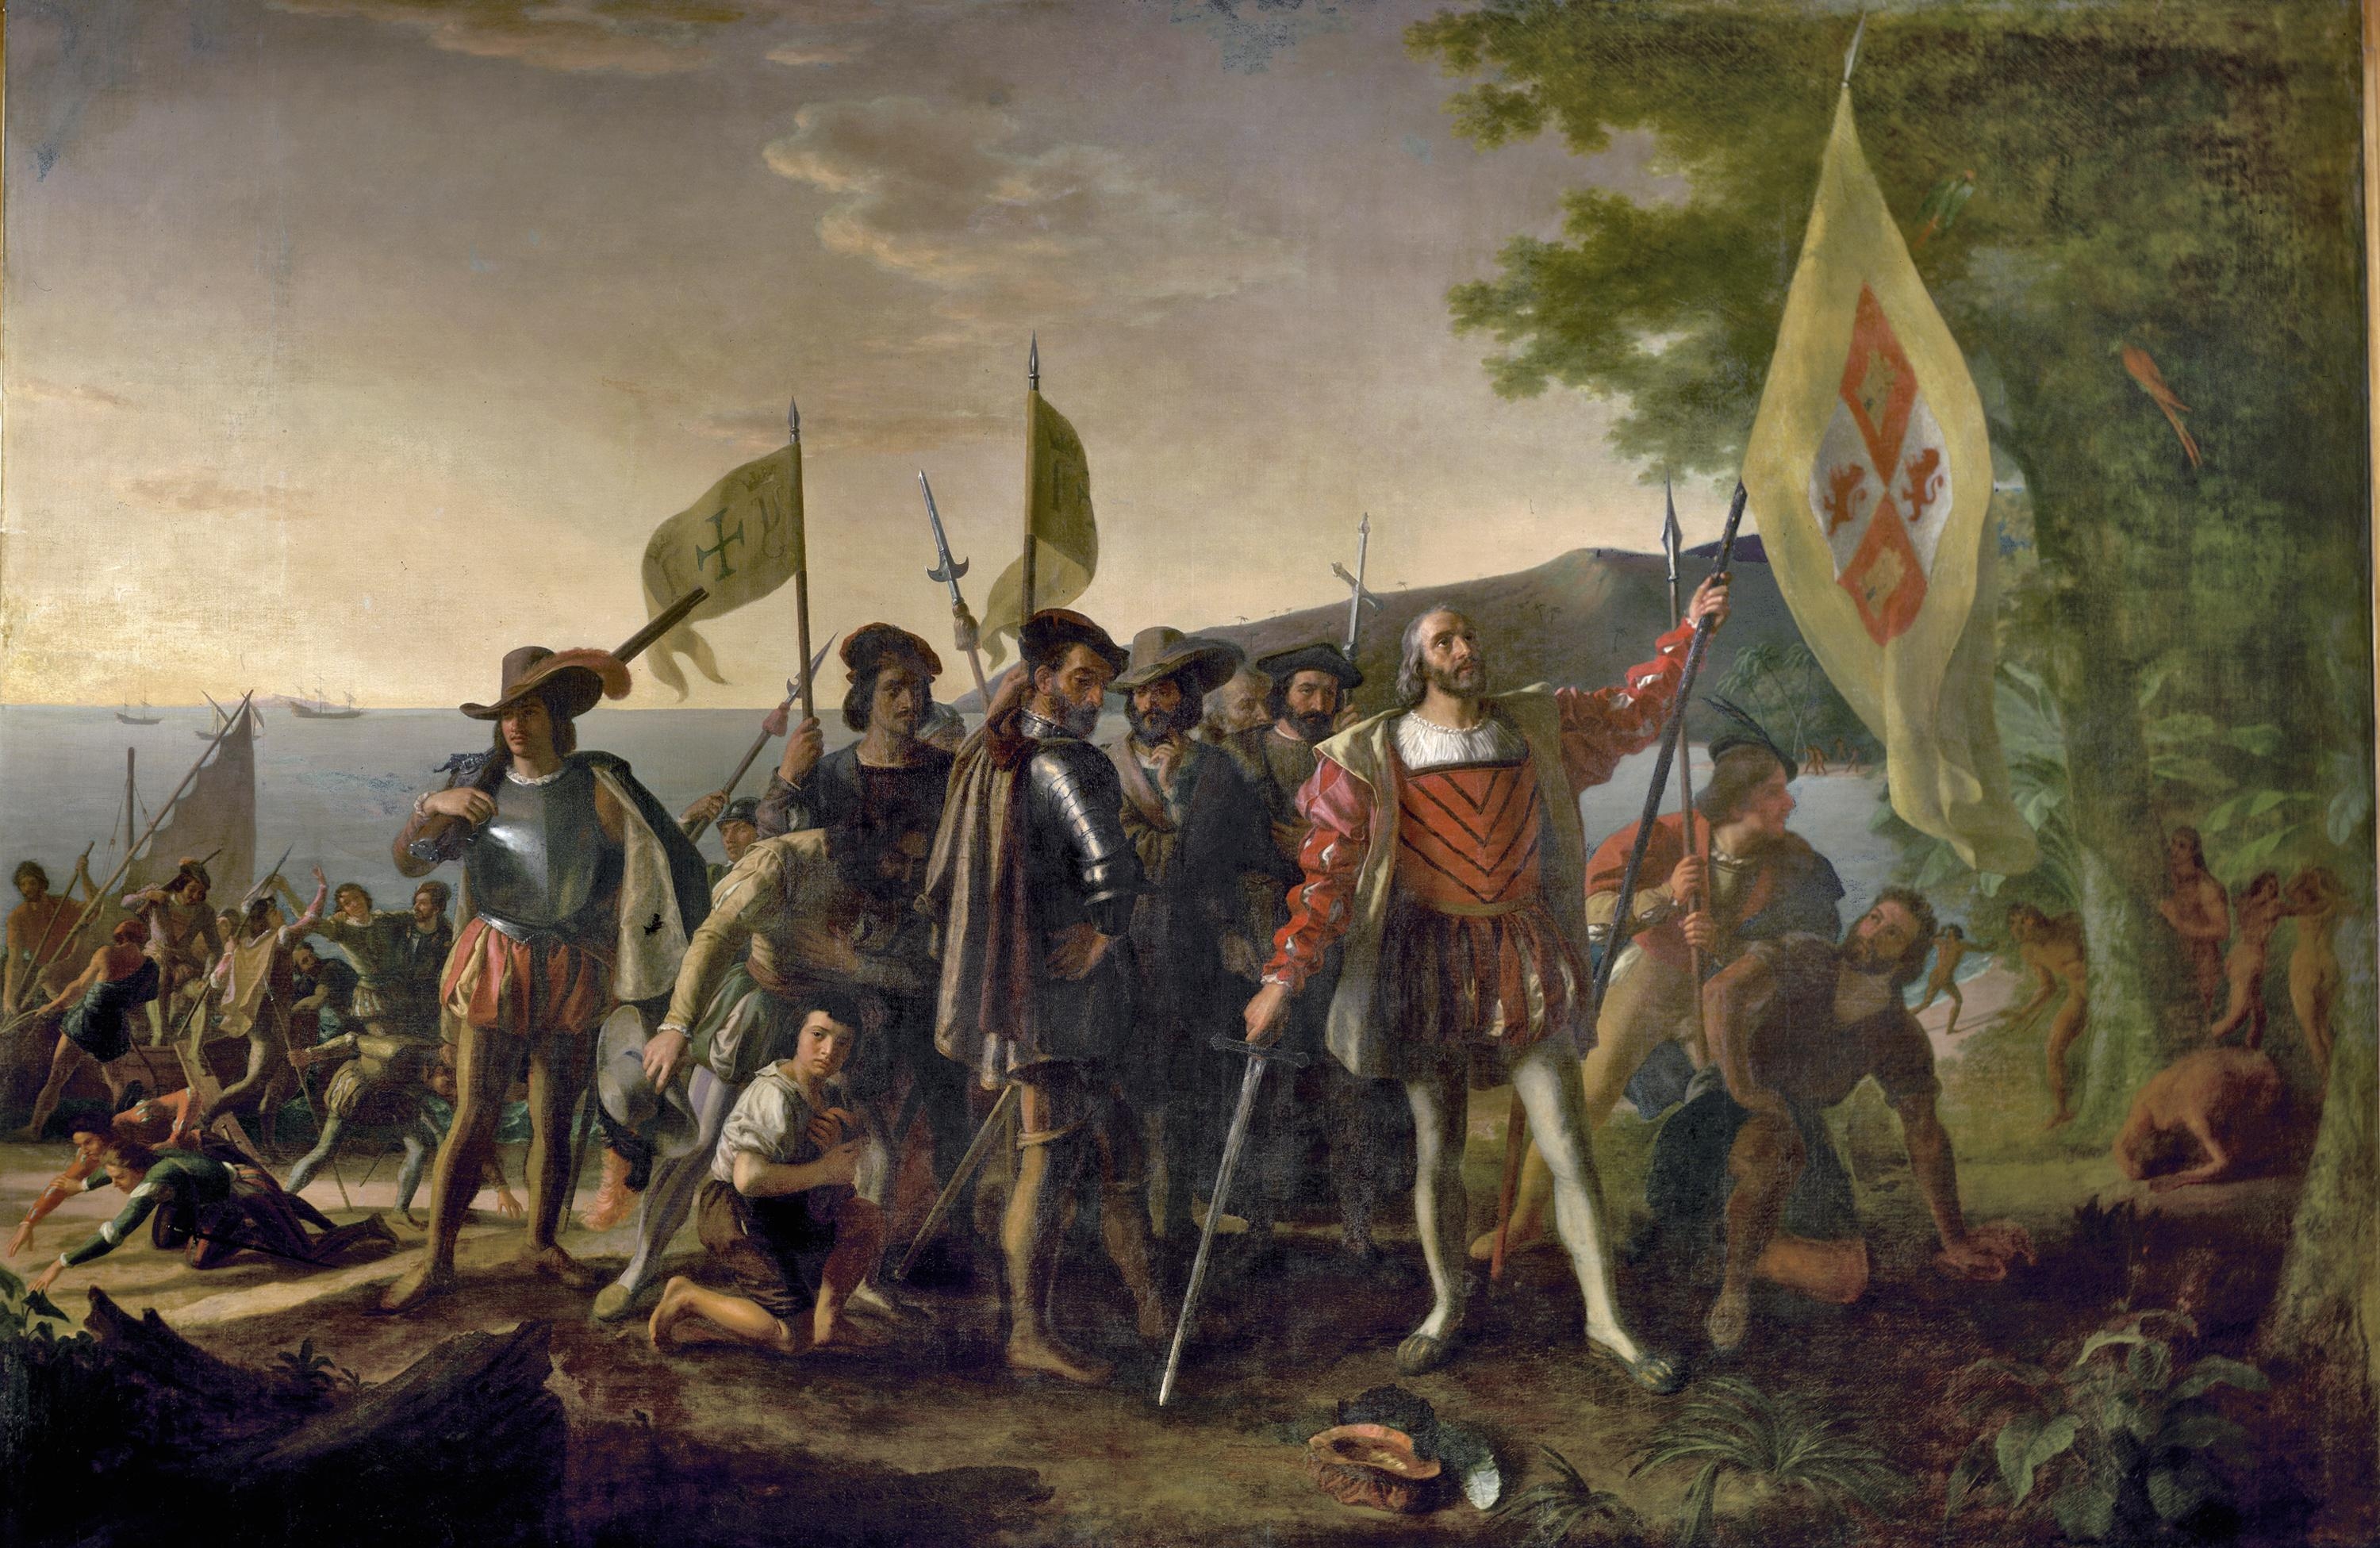 Христофор Колумб бывал в Мексиканском заливе